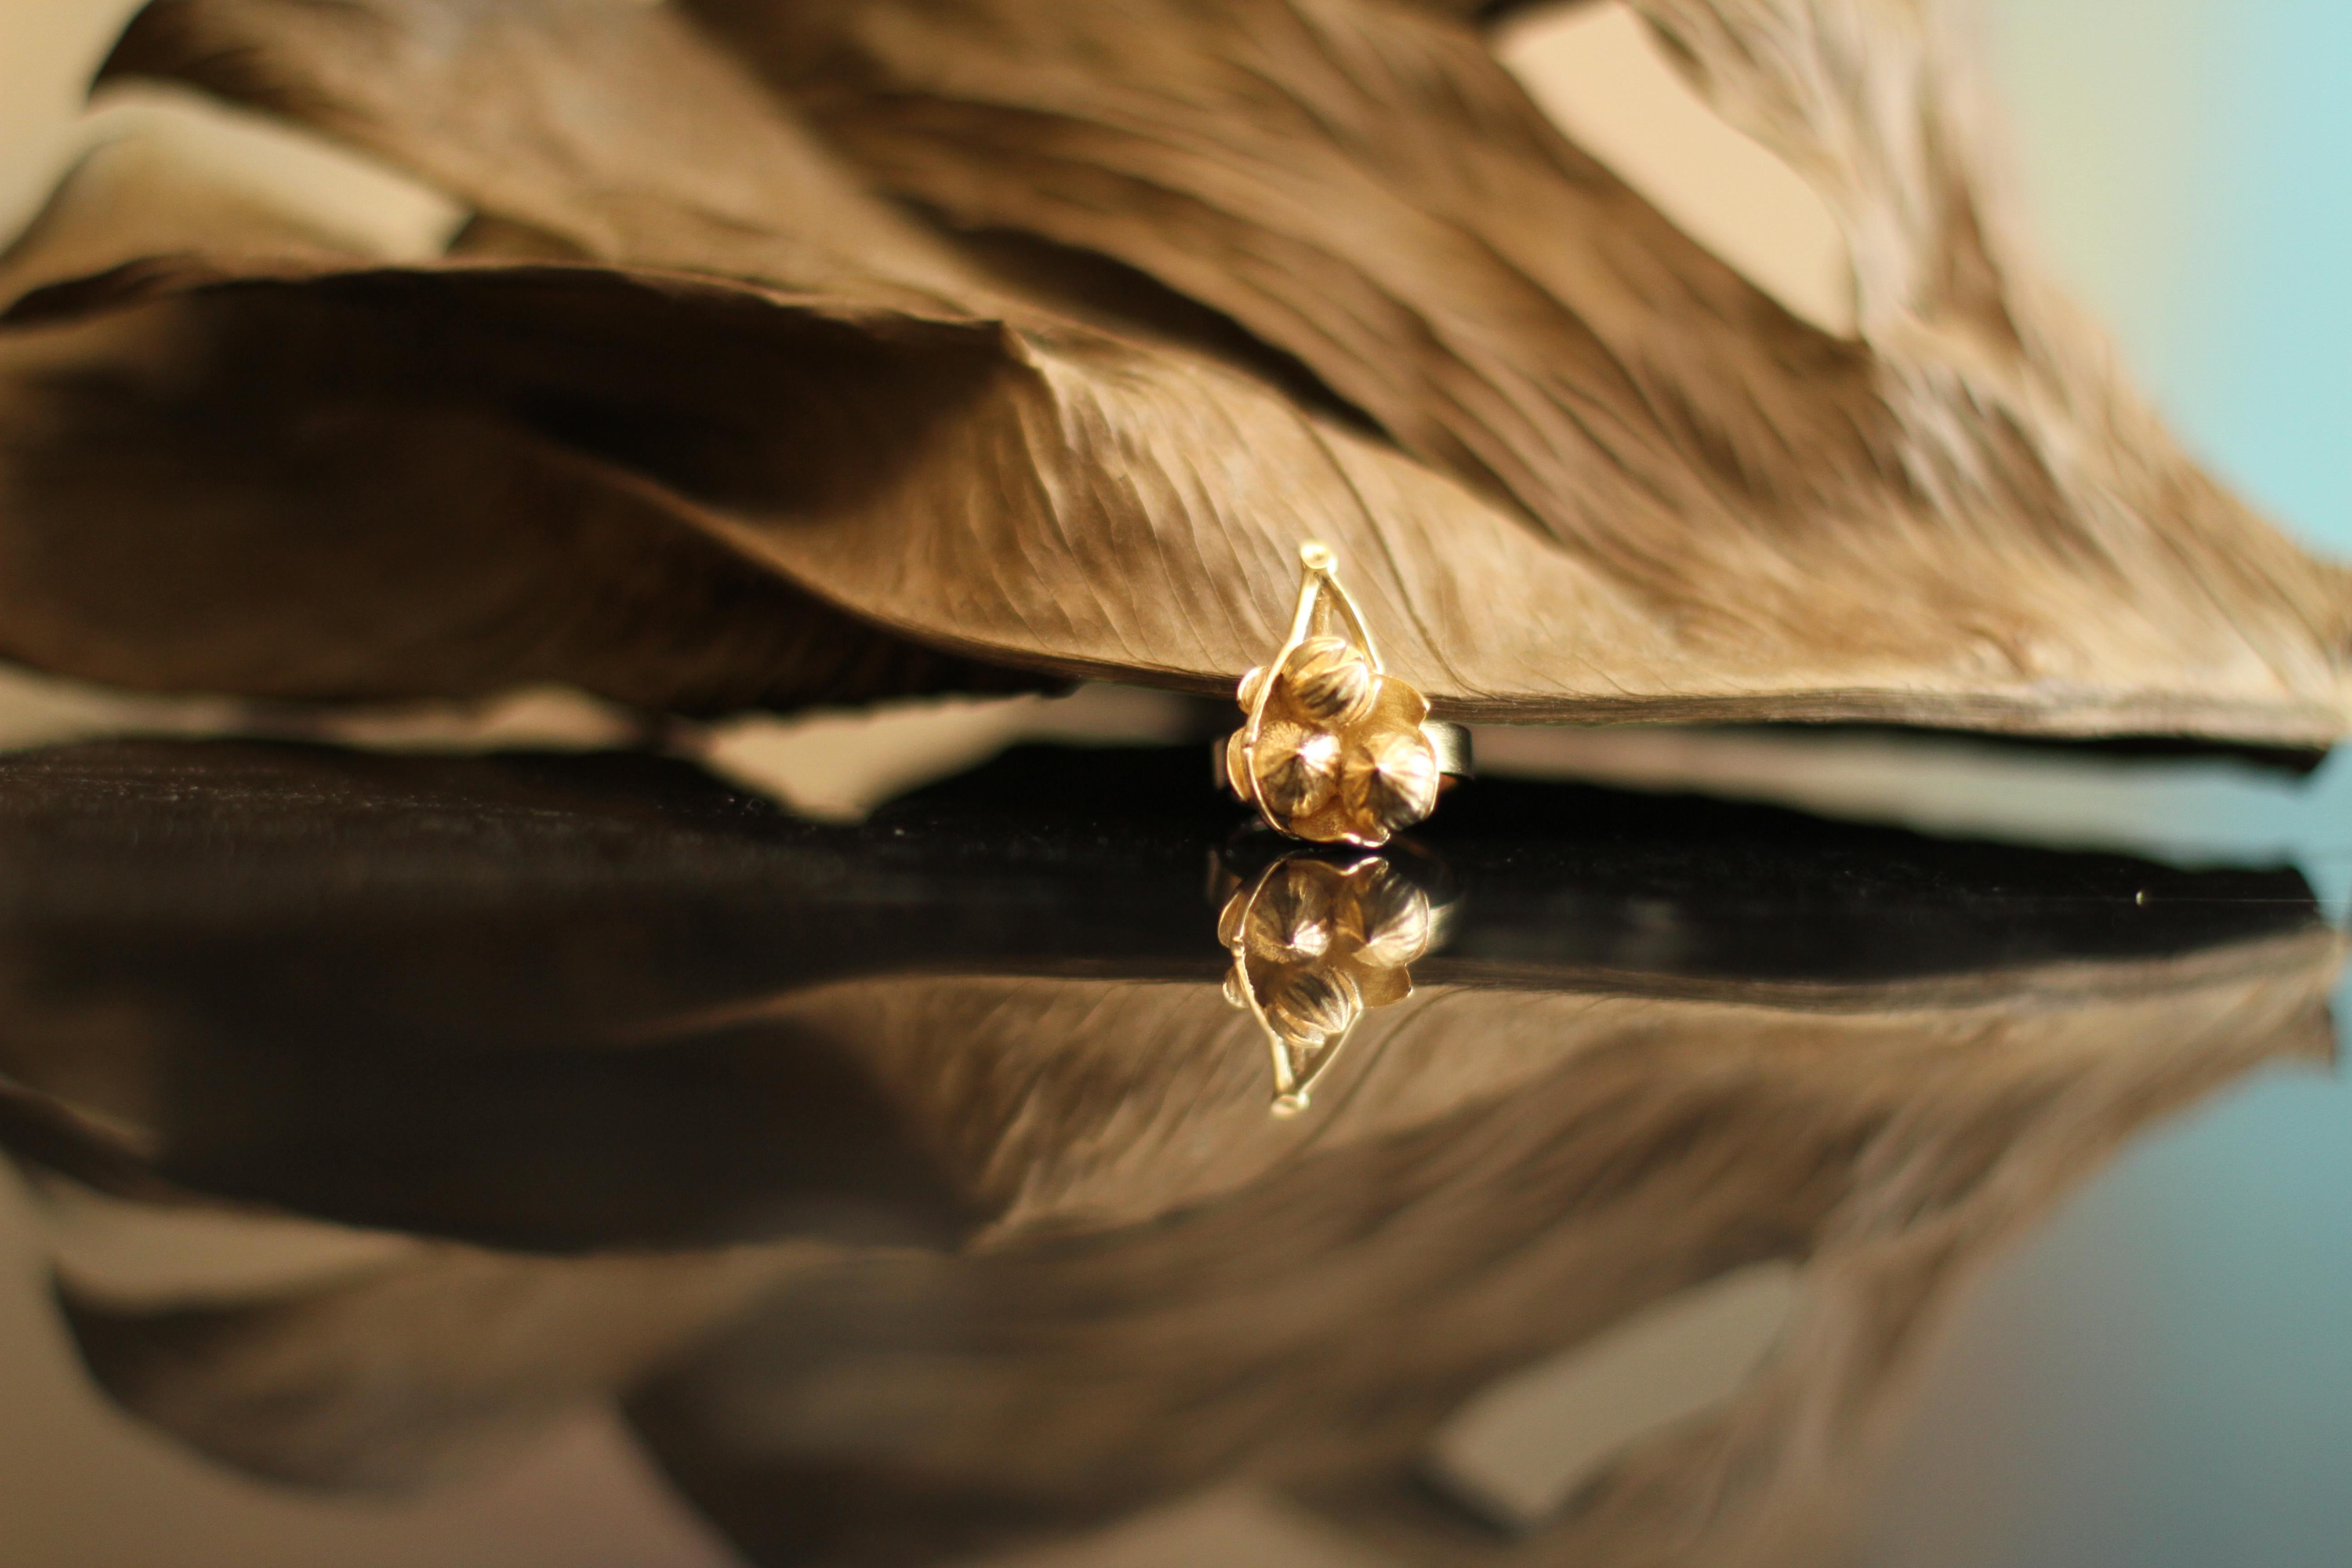 Ce collier pendentif Figues sur la feuille est en or rose 14 carats. Il s'agit d'une collection en édition limitée, qui a fait l'objet d'un article dans Vogue UA.

Il est conçu par la peintre à l'huile Polya Medvedeva, qui s'est inspirée des